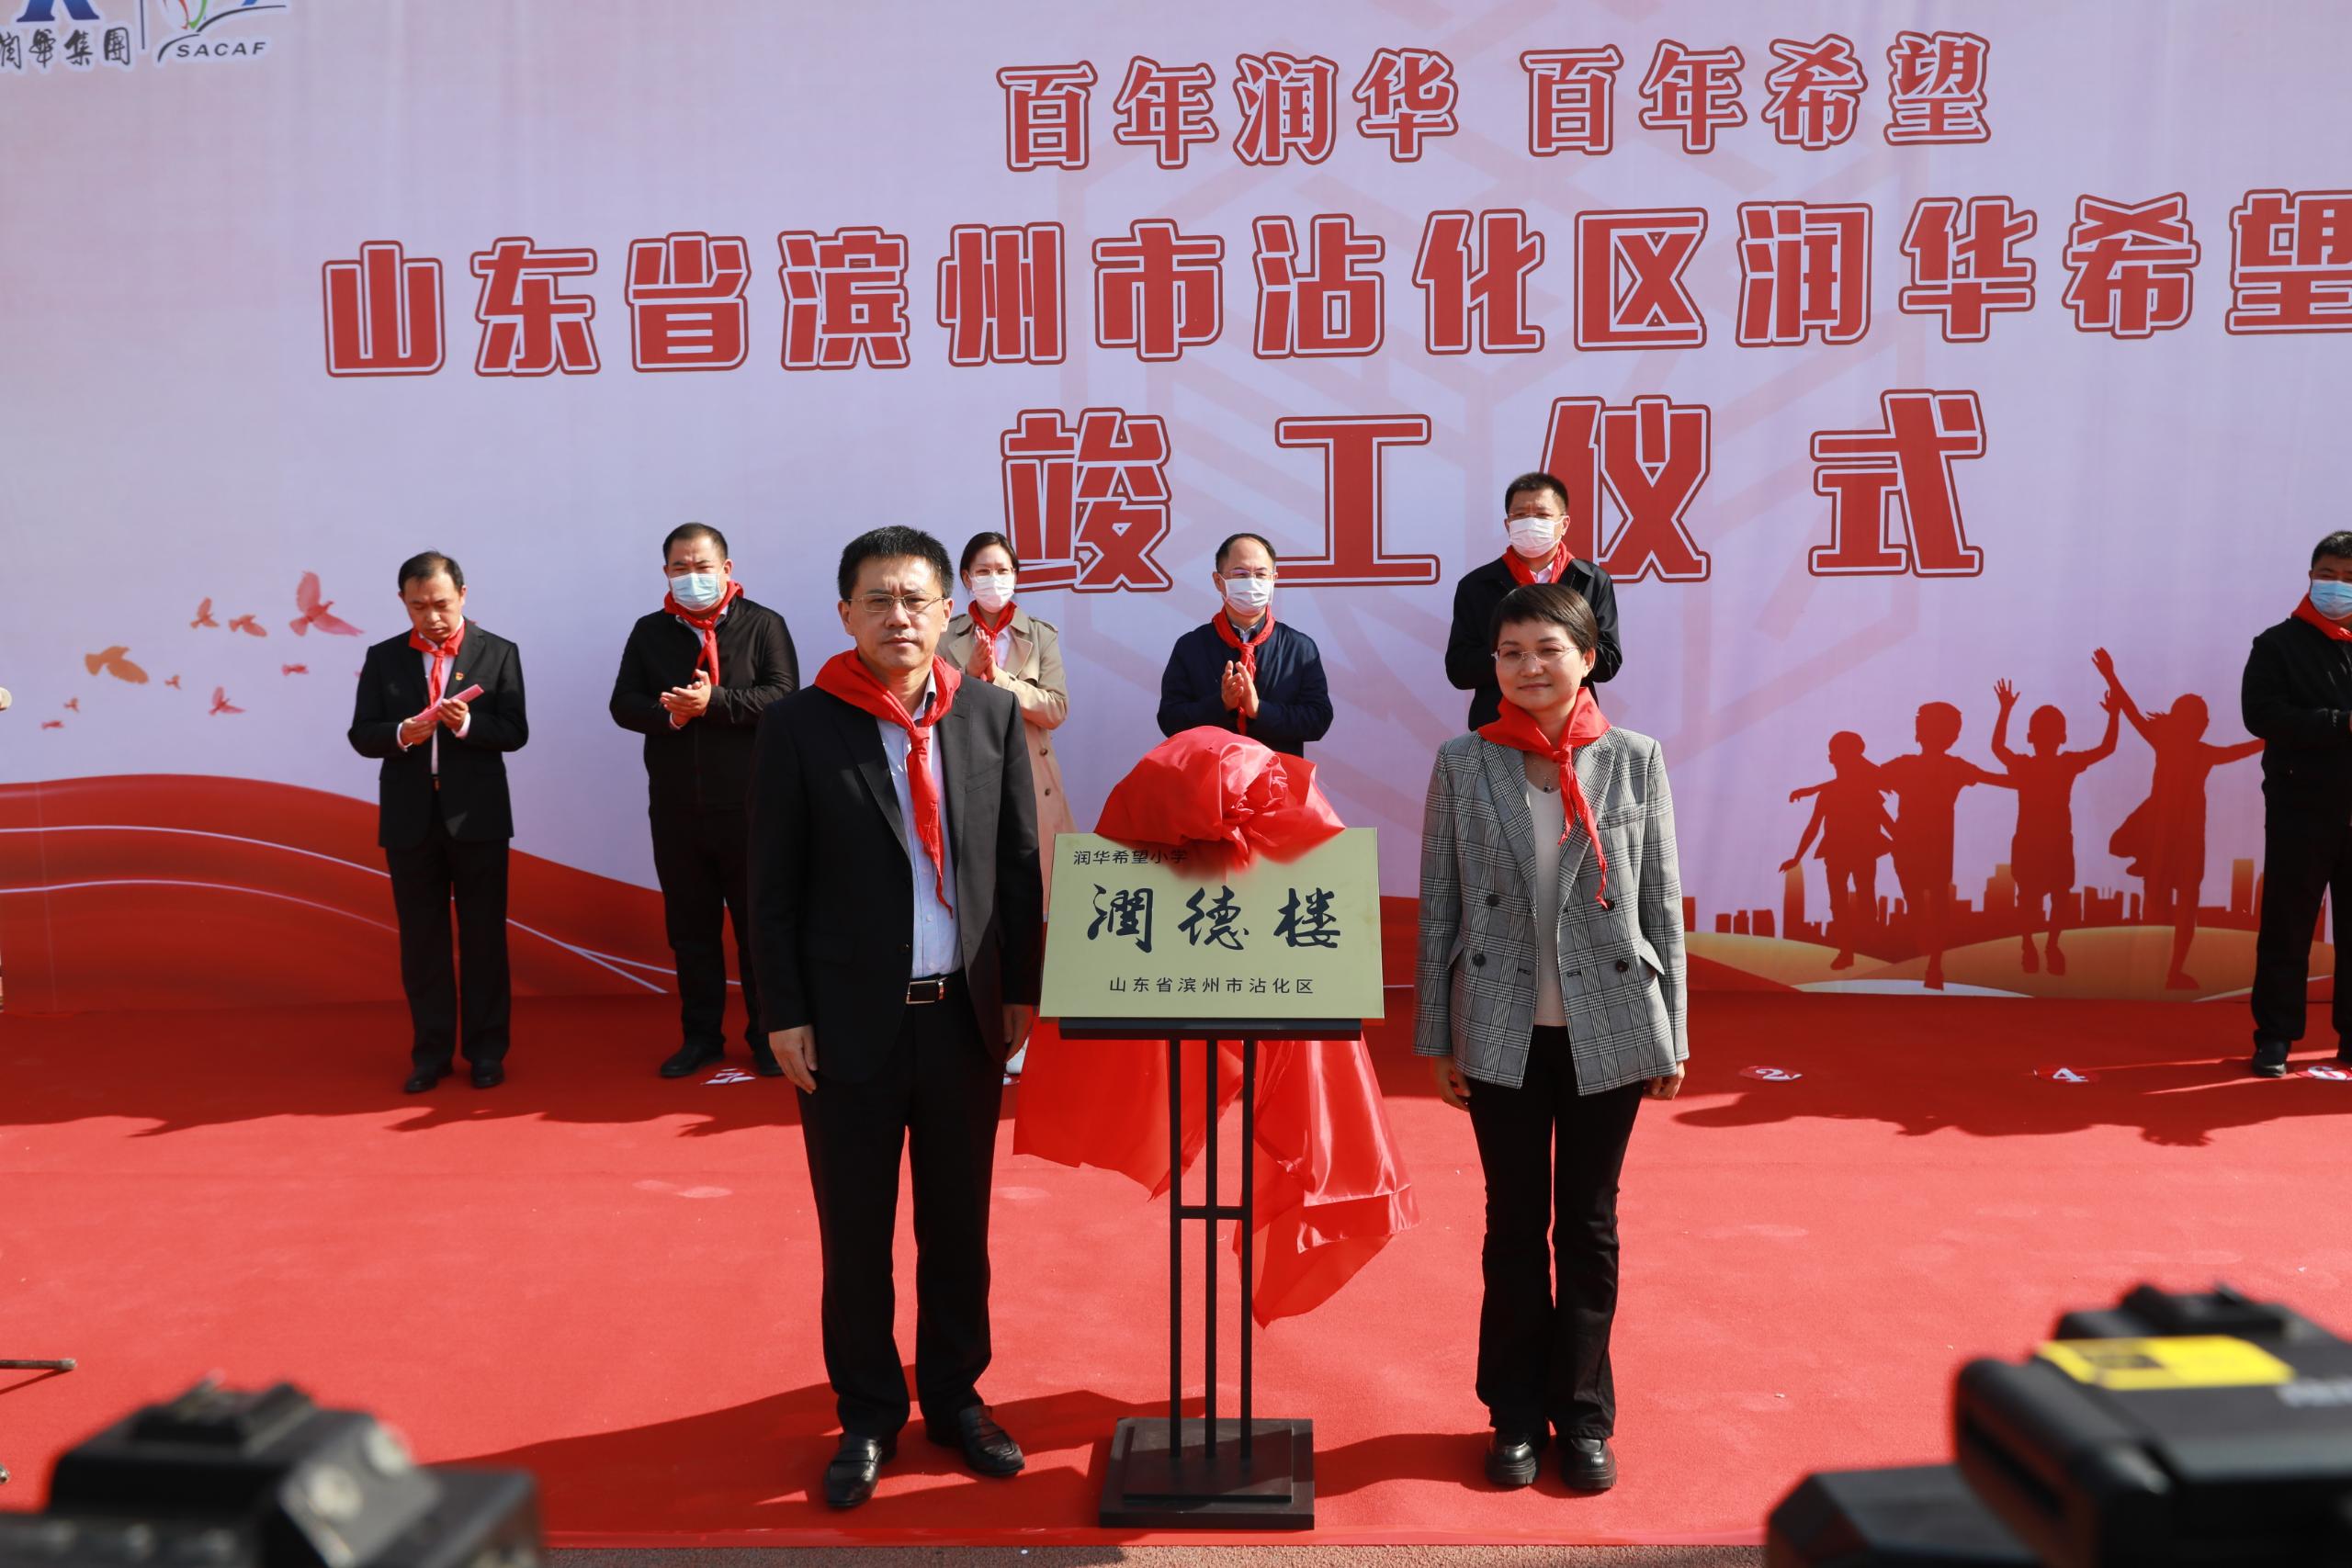 集团援建的第十所希望小学—滨州沾化w88win希望小学竣工启用！